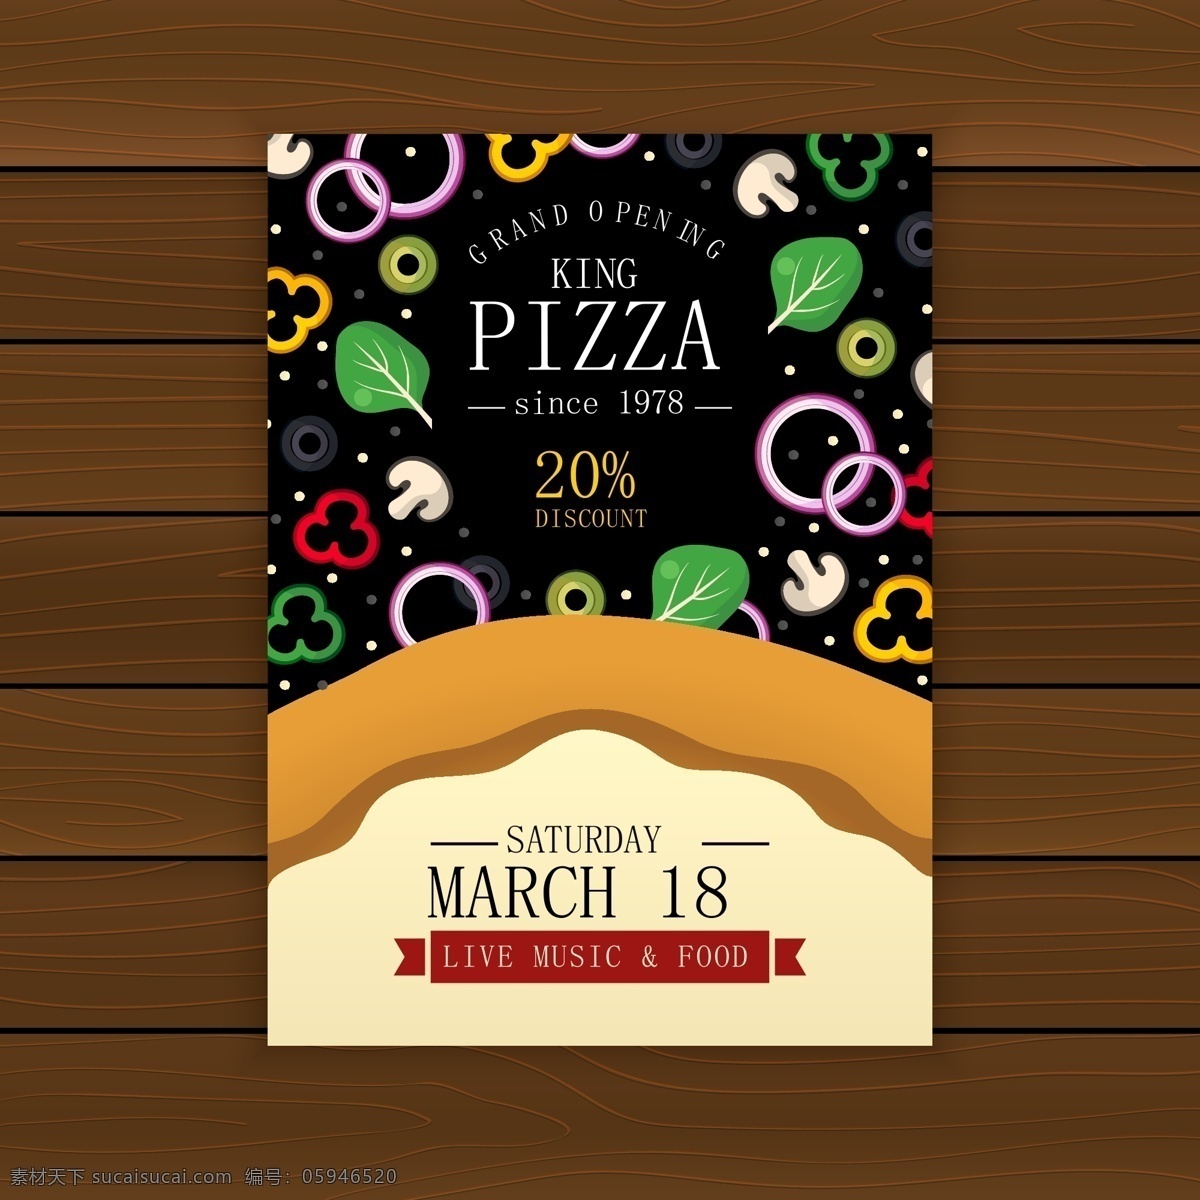 披萨矢量海报 比萨 披萨平铺 披萨摆设 披萨制作 披萨海报 披萨展板 比萨灯箱 披萨文化 披萨促销 披萨西餐 披萨快餐 披萨加盟 披萨店 披萨包装 披萨美食 西式披萨 披萨价格表 披萨外卖 披萨画 披萨菜单 正宗披萨 披萨饼 披萨传单 意大利披萨 pizza 披萨 美味披萨 披萨做法 披萨饮食 披萨团购 美食天下